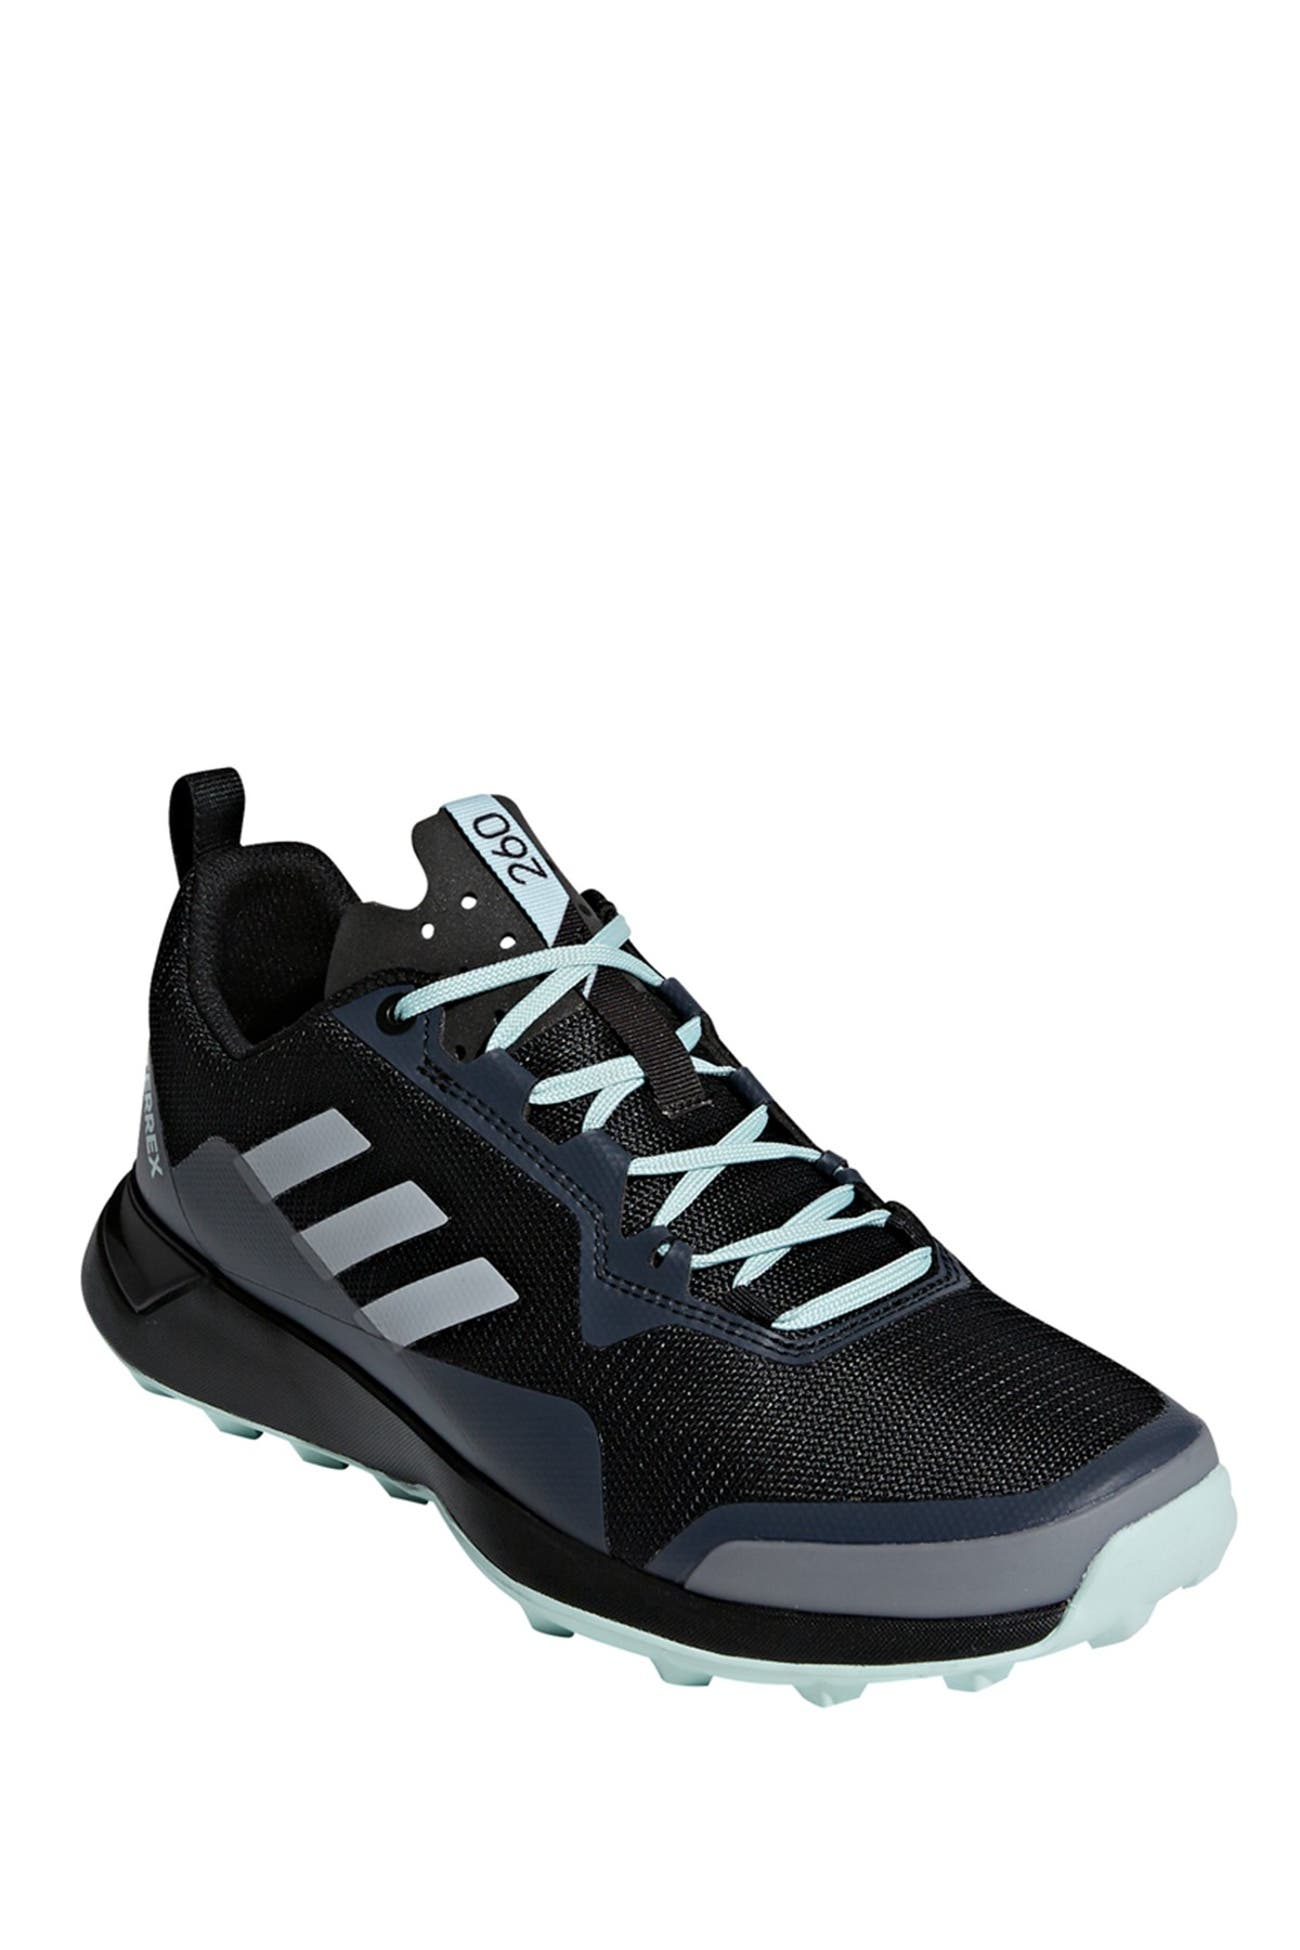 adidas | Terrex CMTK Gore-Tex(R) Waterproof Hiking Sneaker | Nordstrom Rack